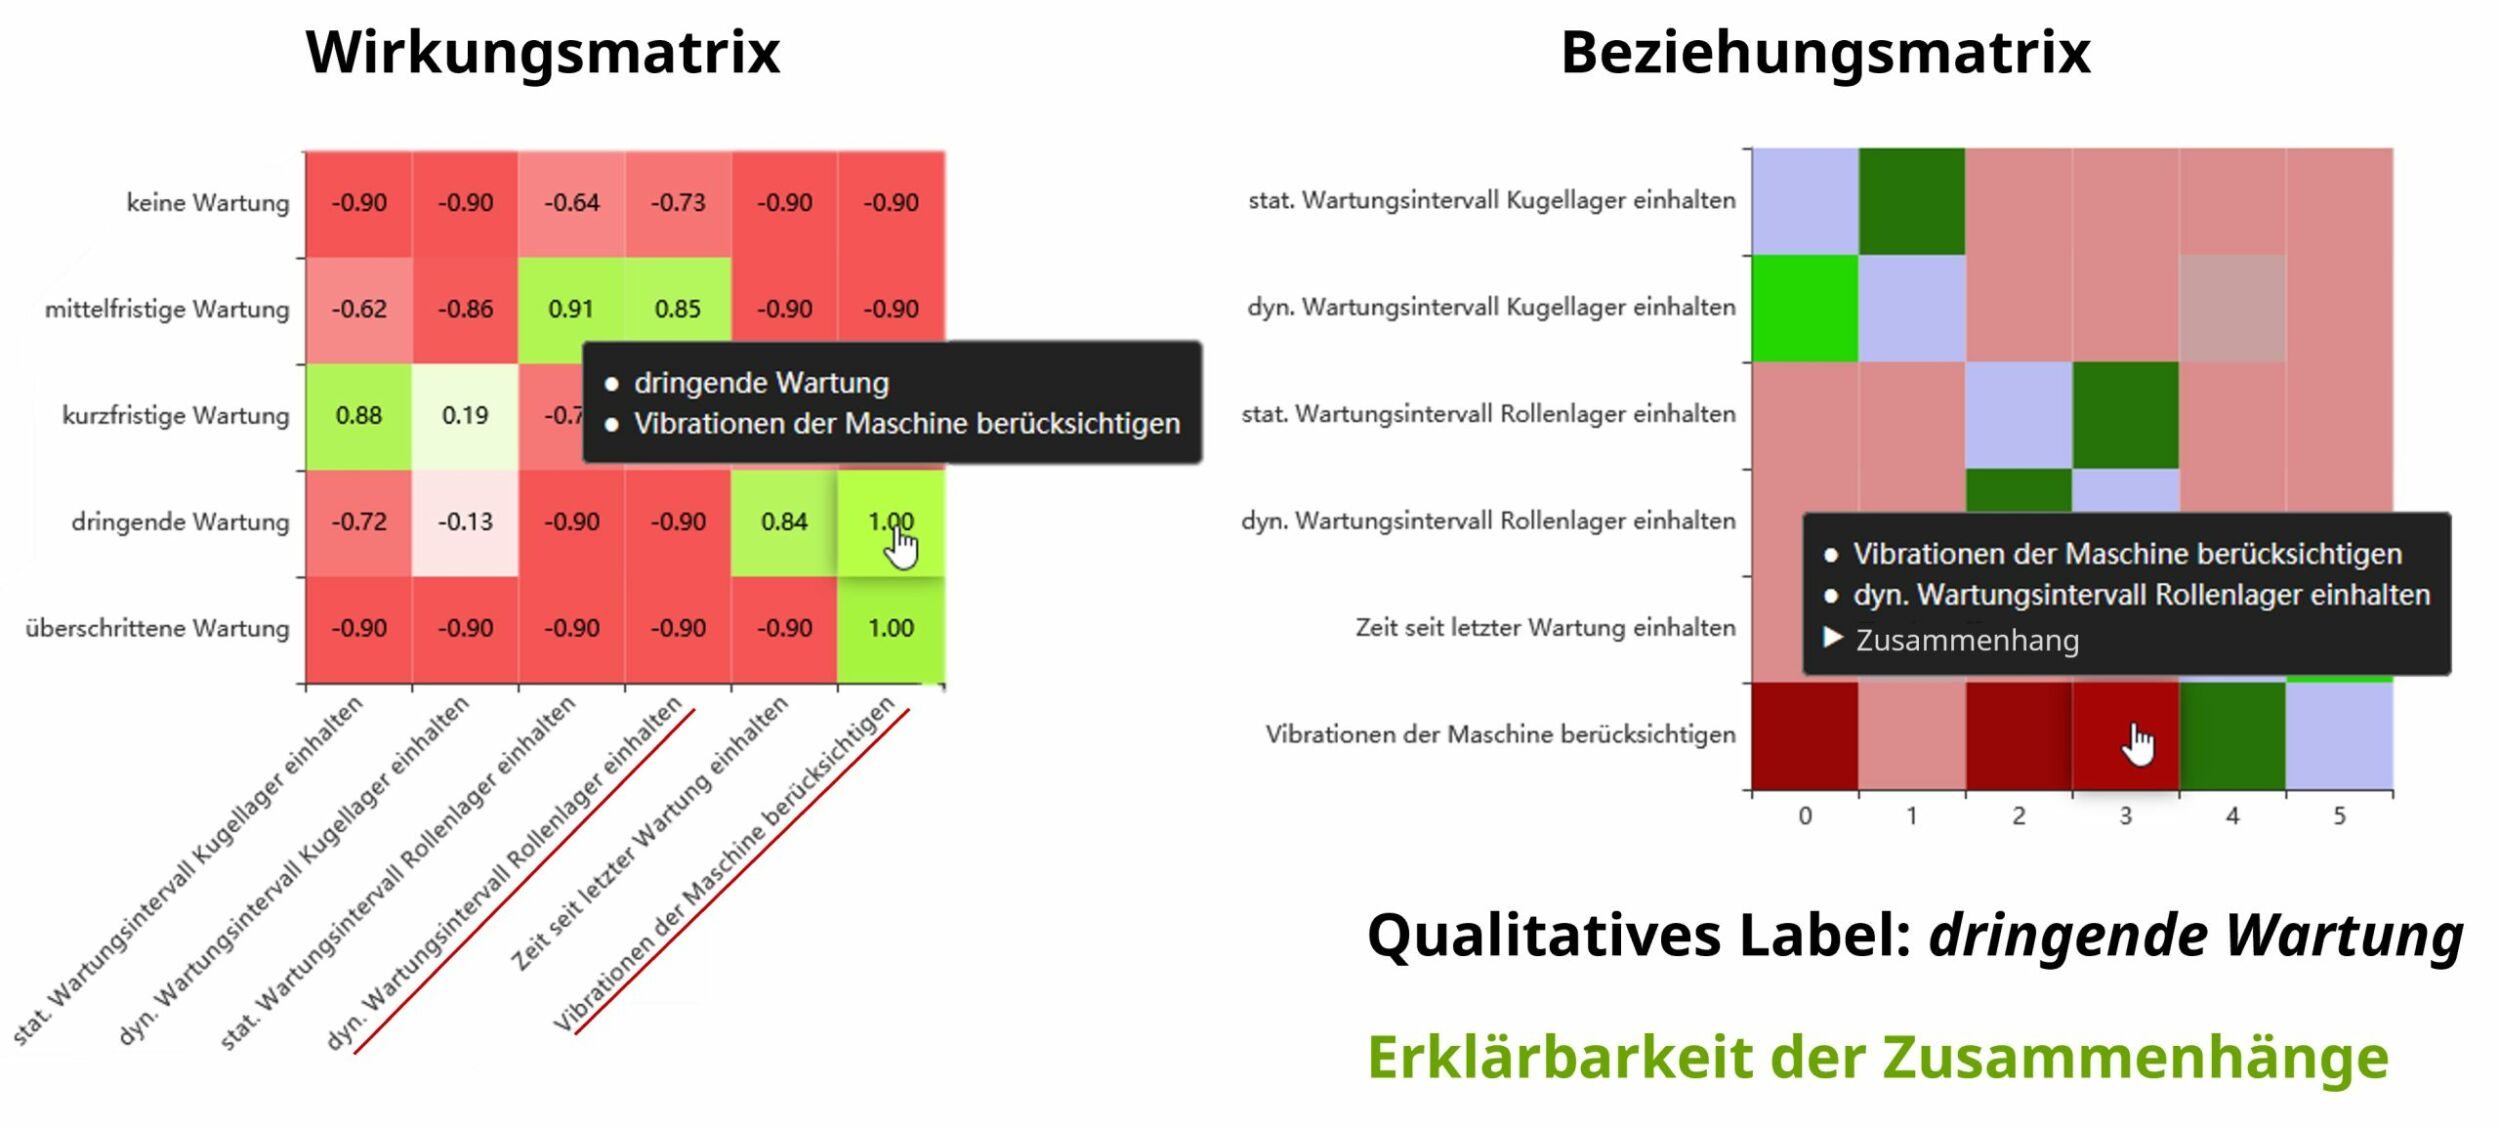 Wirkungs- und Beziehungsmatrix – KI-gelernte Qualitative Labels mit Zusammenhängen (Bild: PSI FLS Fuzzy Logik & Neuro Systeme GmbH)